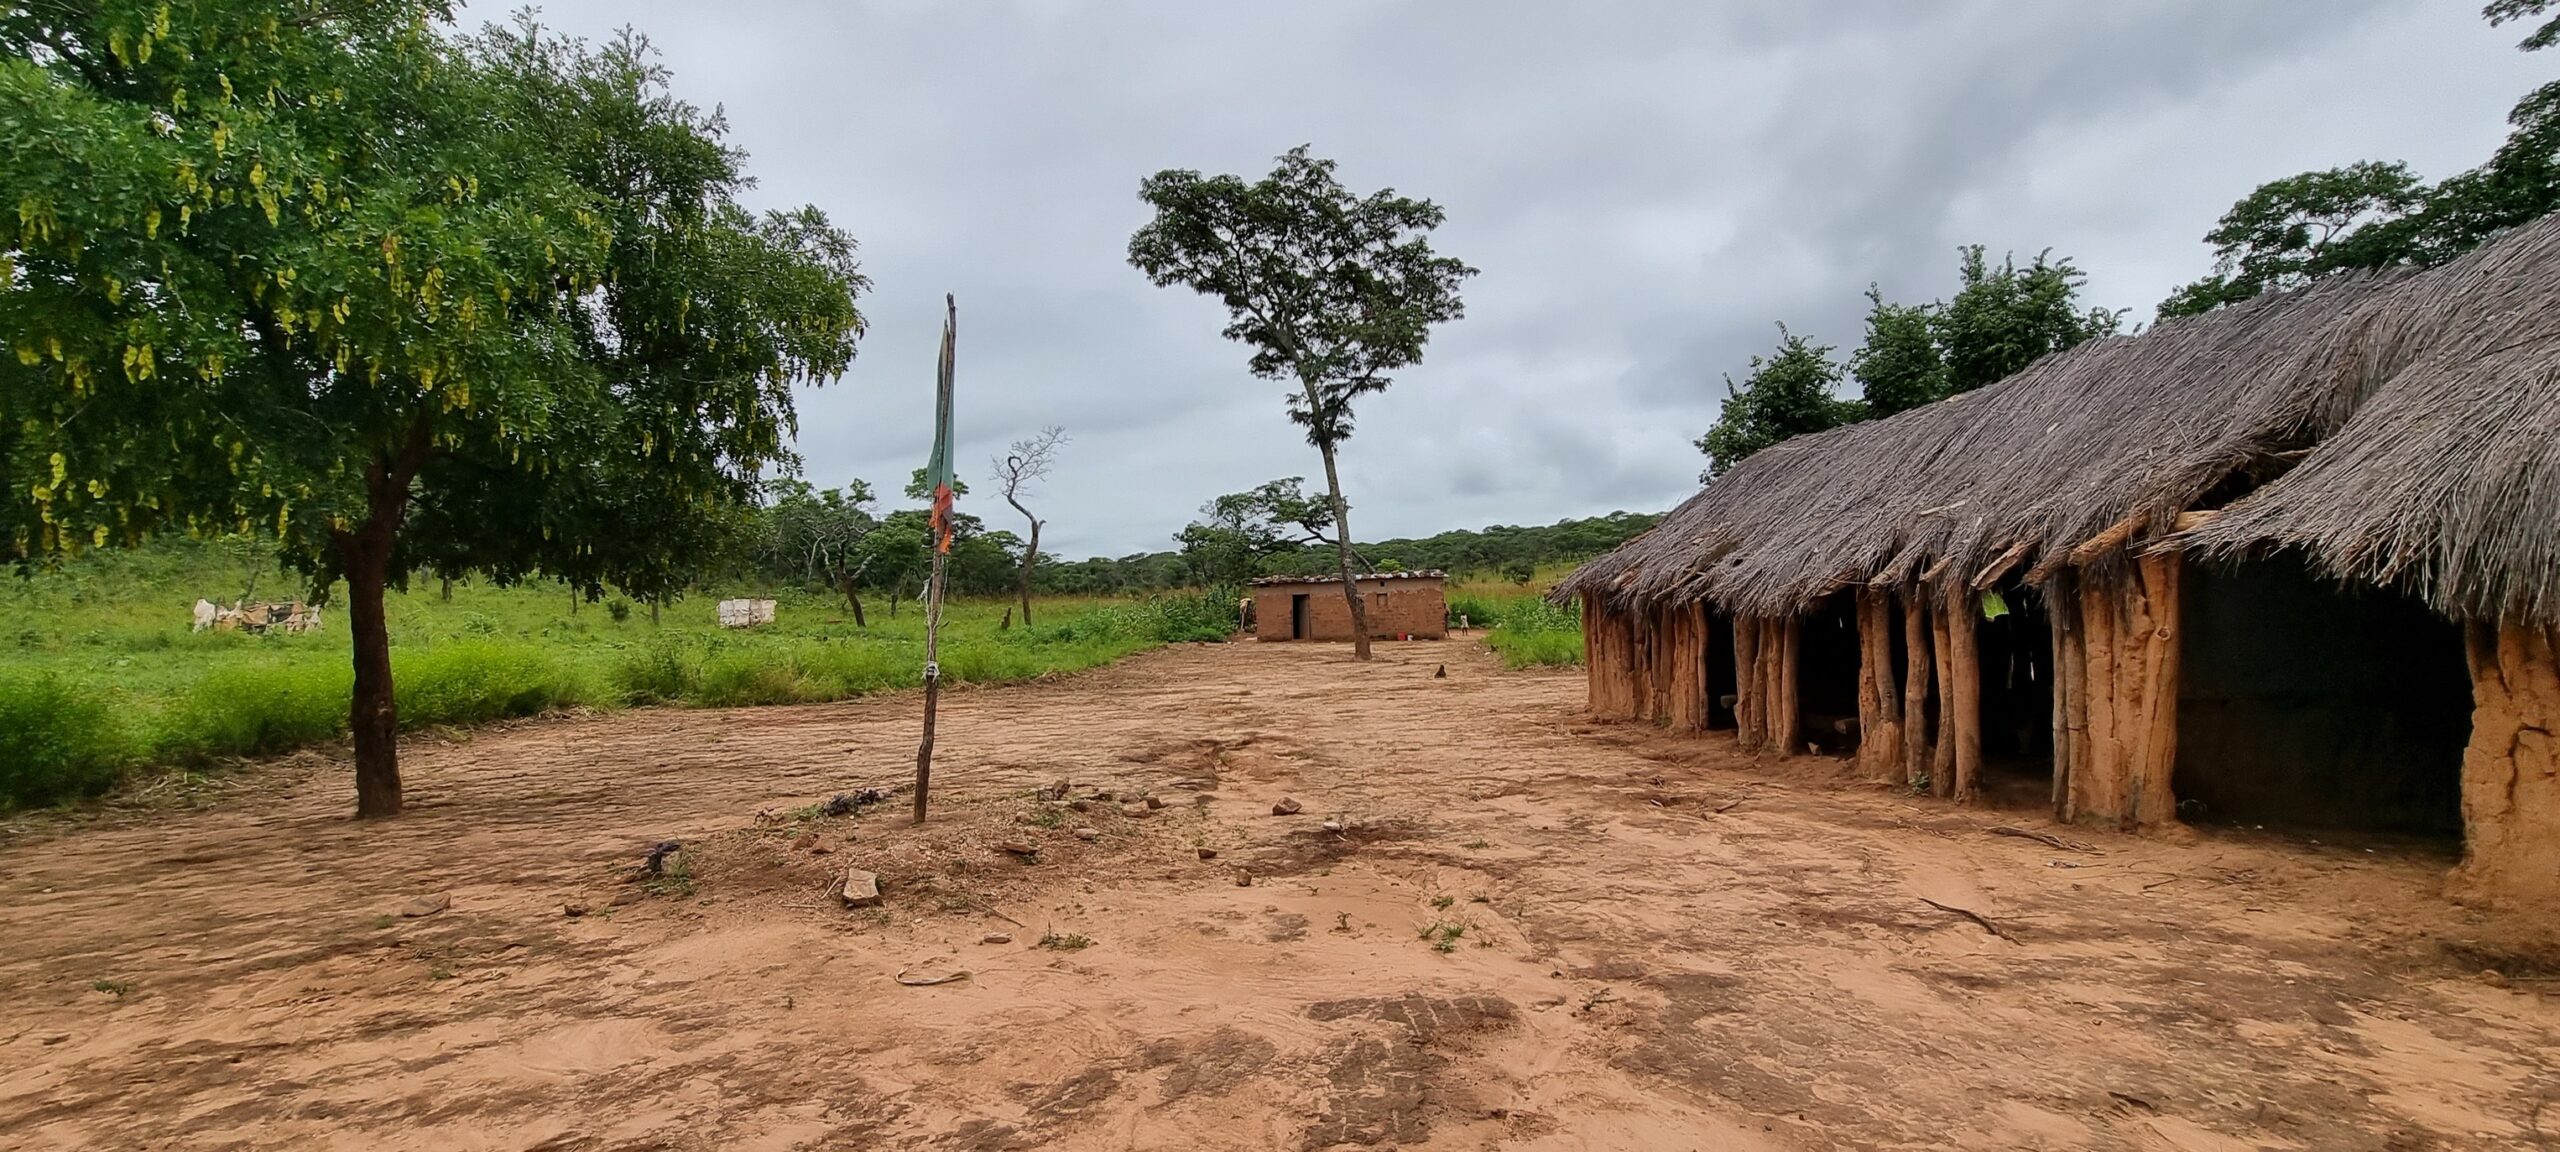 The Village of Kaindu on the outskirts of the Mumbwa Boma